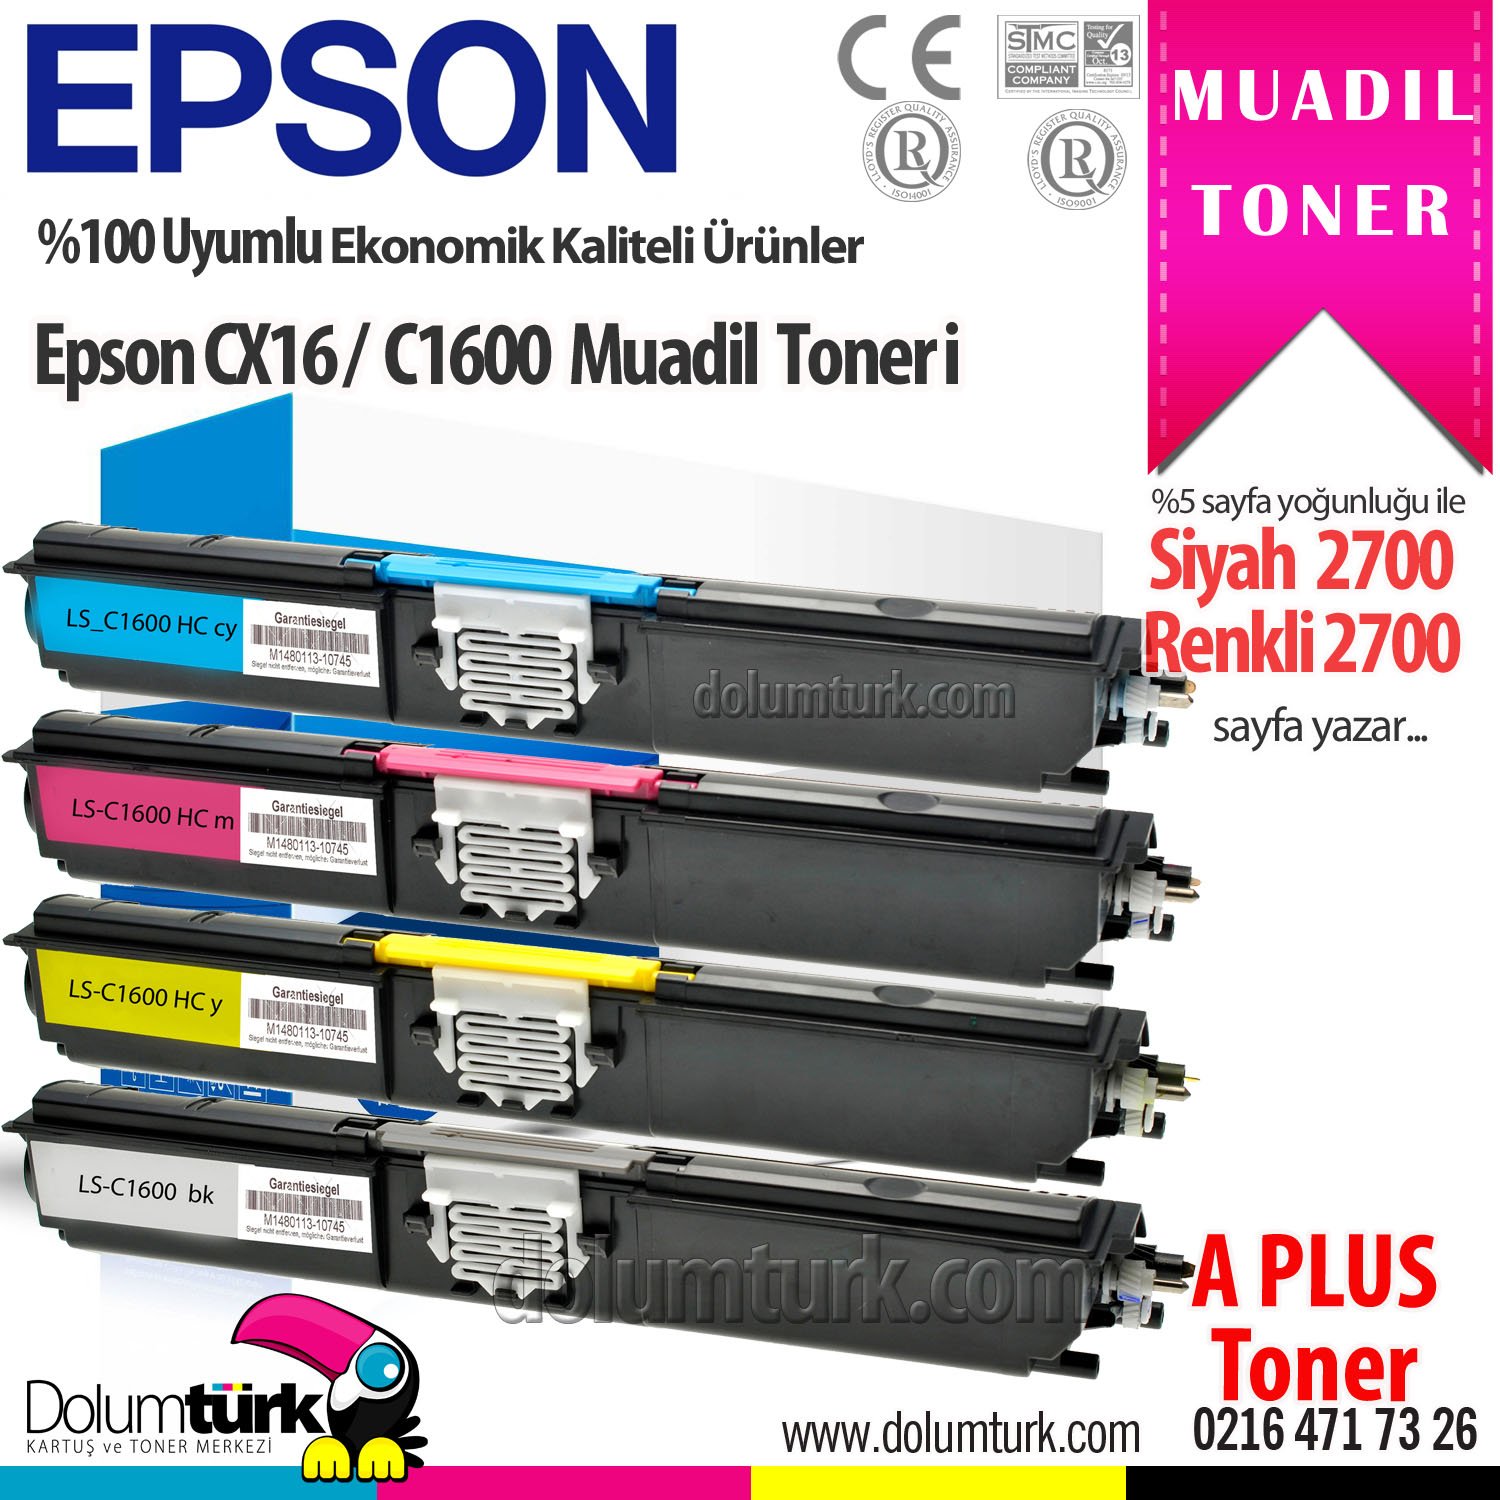 Epson CX16 / C1600 / S050557 / S050556 / S050555 / S050554 A Plus Muadil Toneri